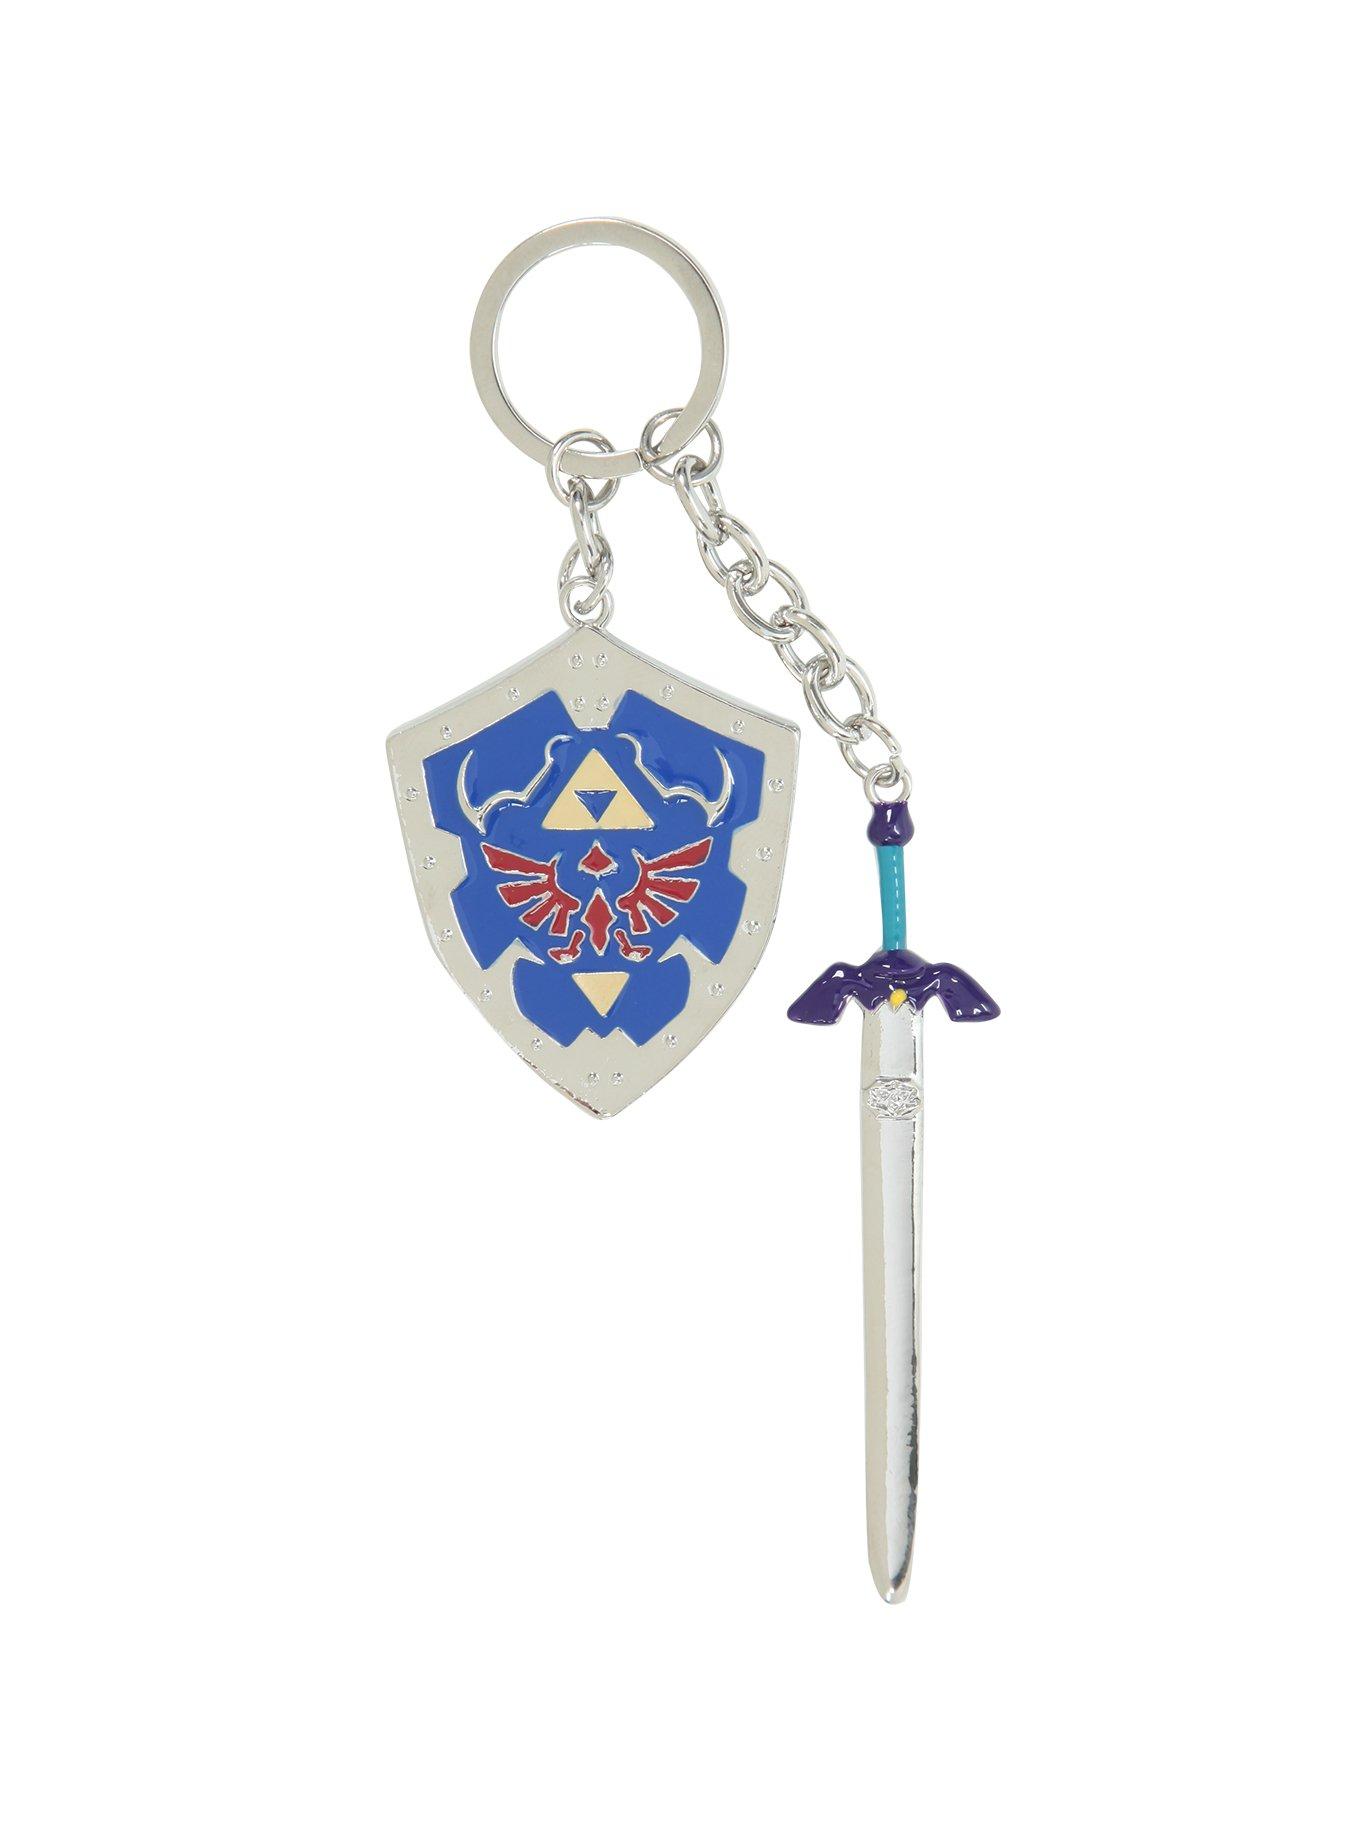 Legend of Zelda Shield Keychain: Gifts & Collectibles — FairyGlen